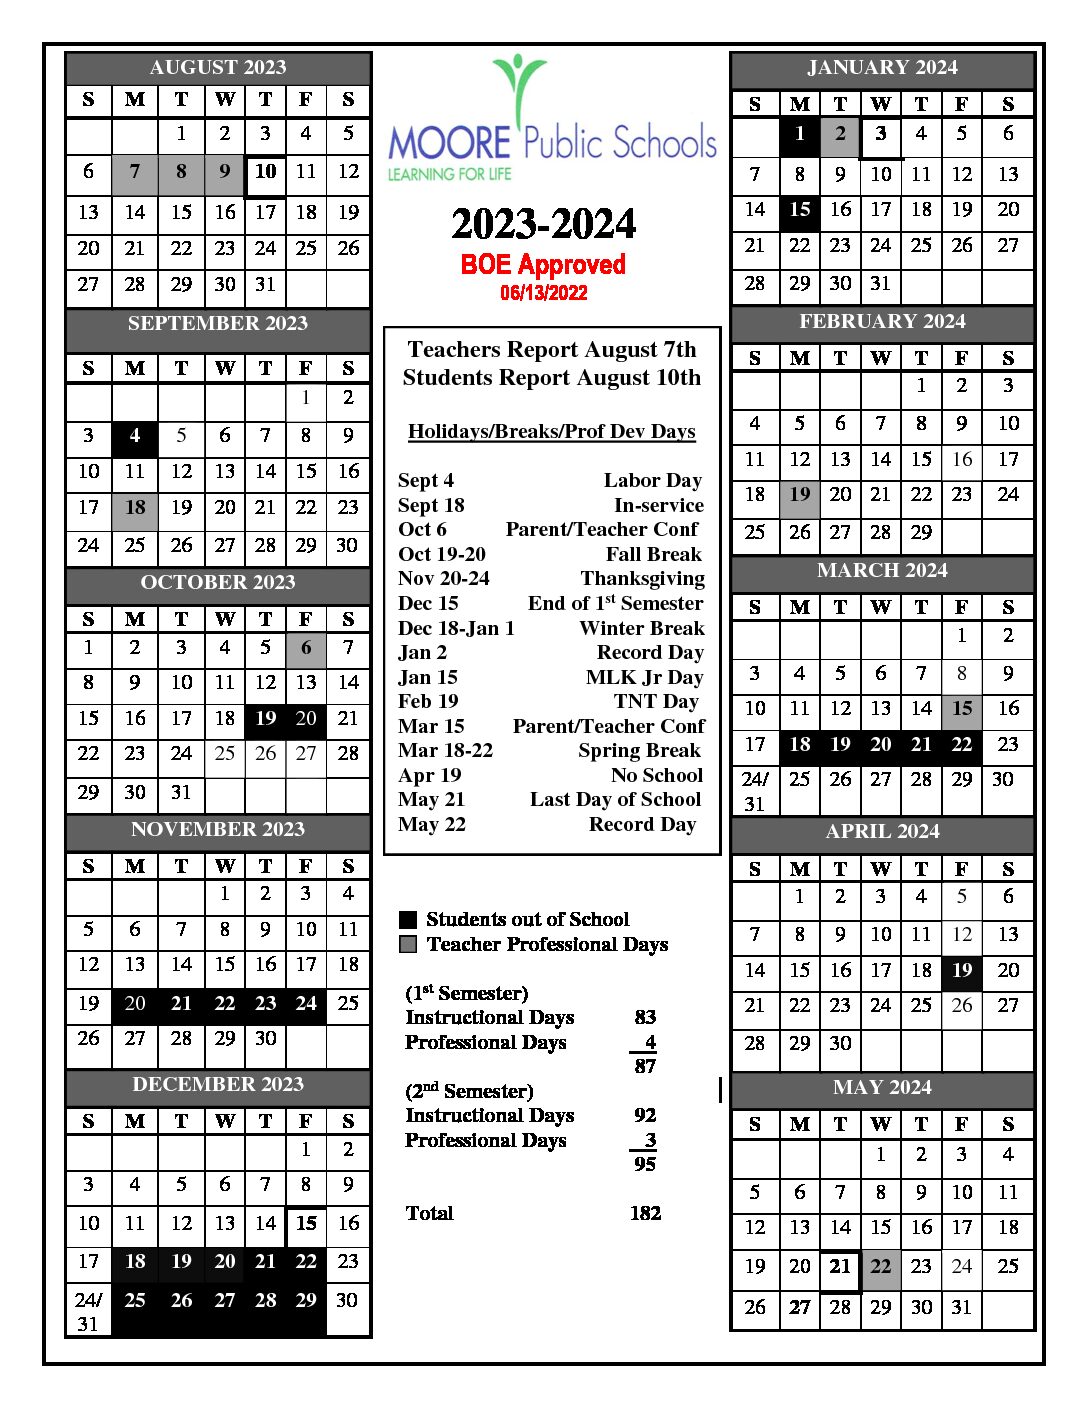 Moore Public Schools Calendar 2023-2024 in PDF